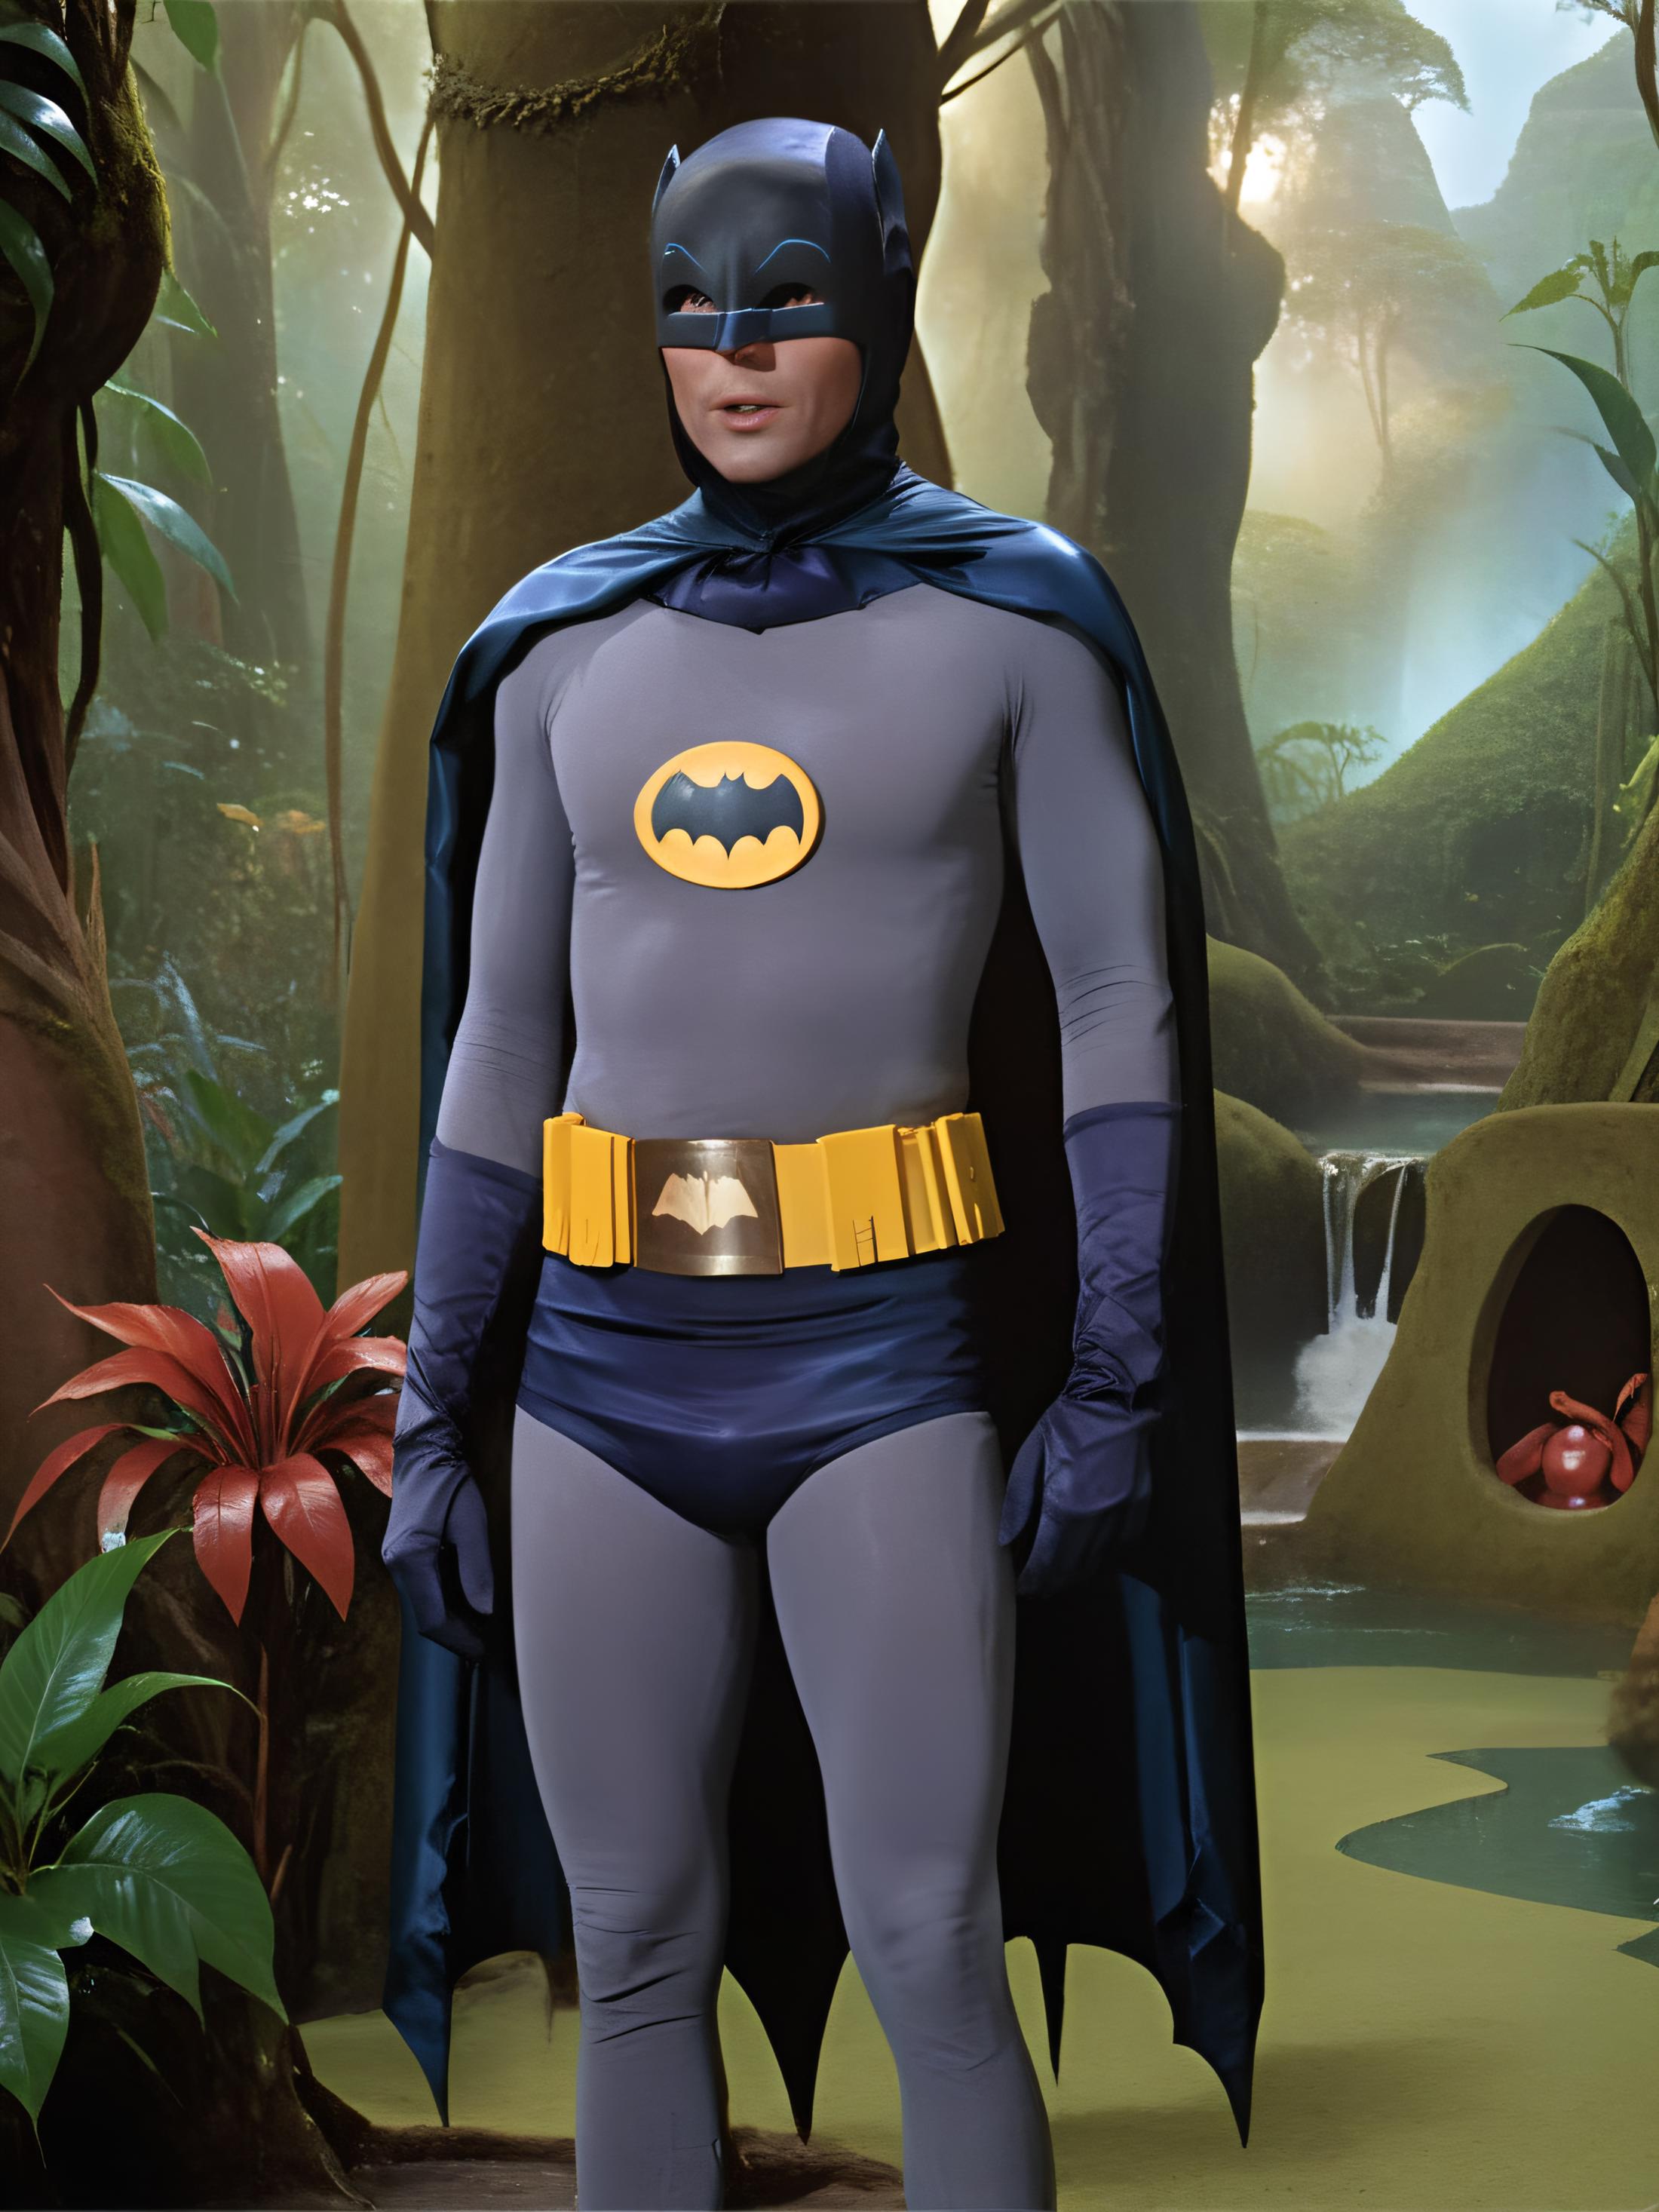 Adam West Batman image by unstableconfusion